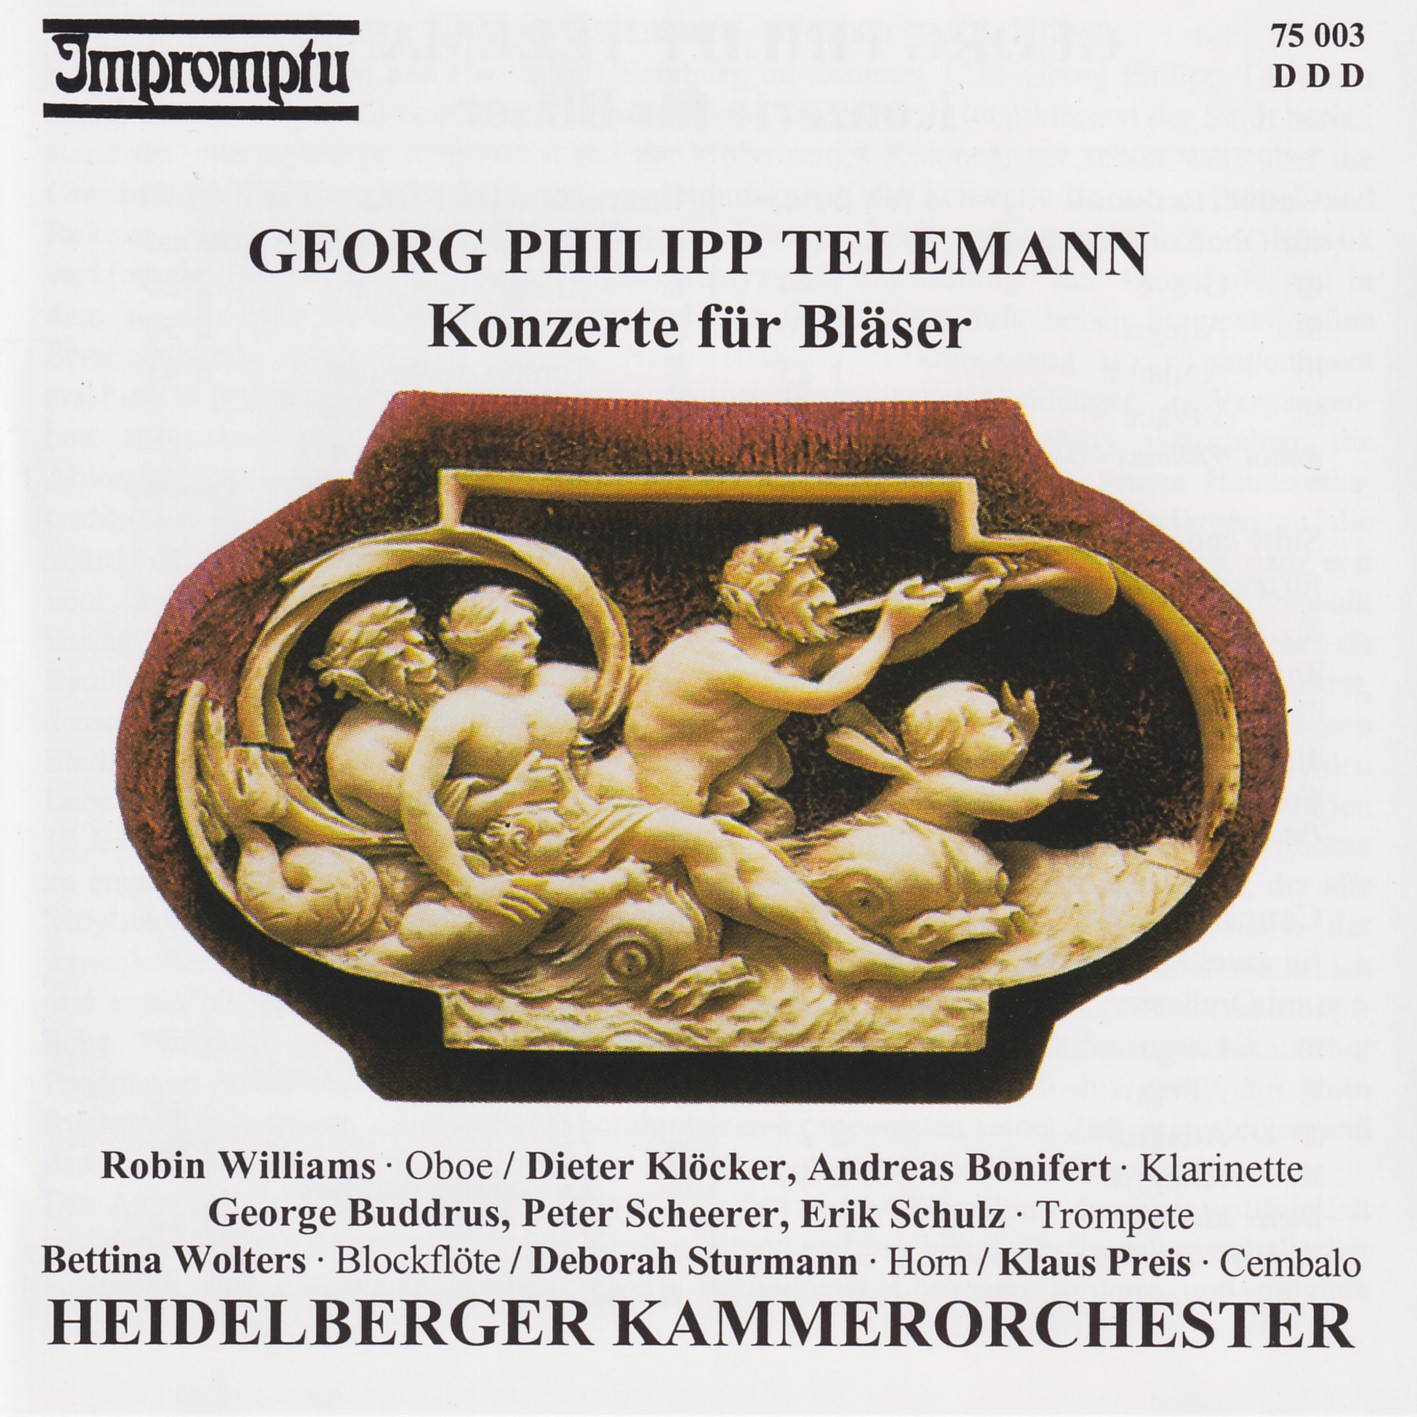 Georg Philipp Telemann - Konzerte für Bläser